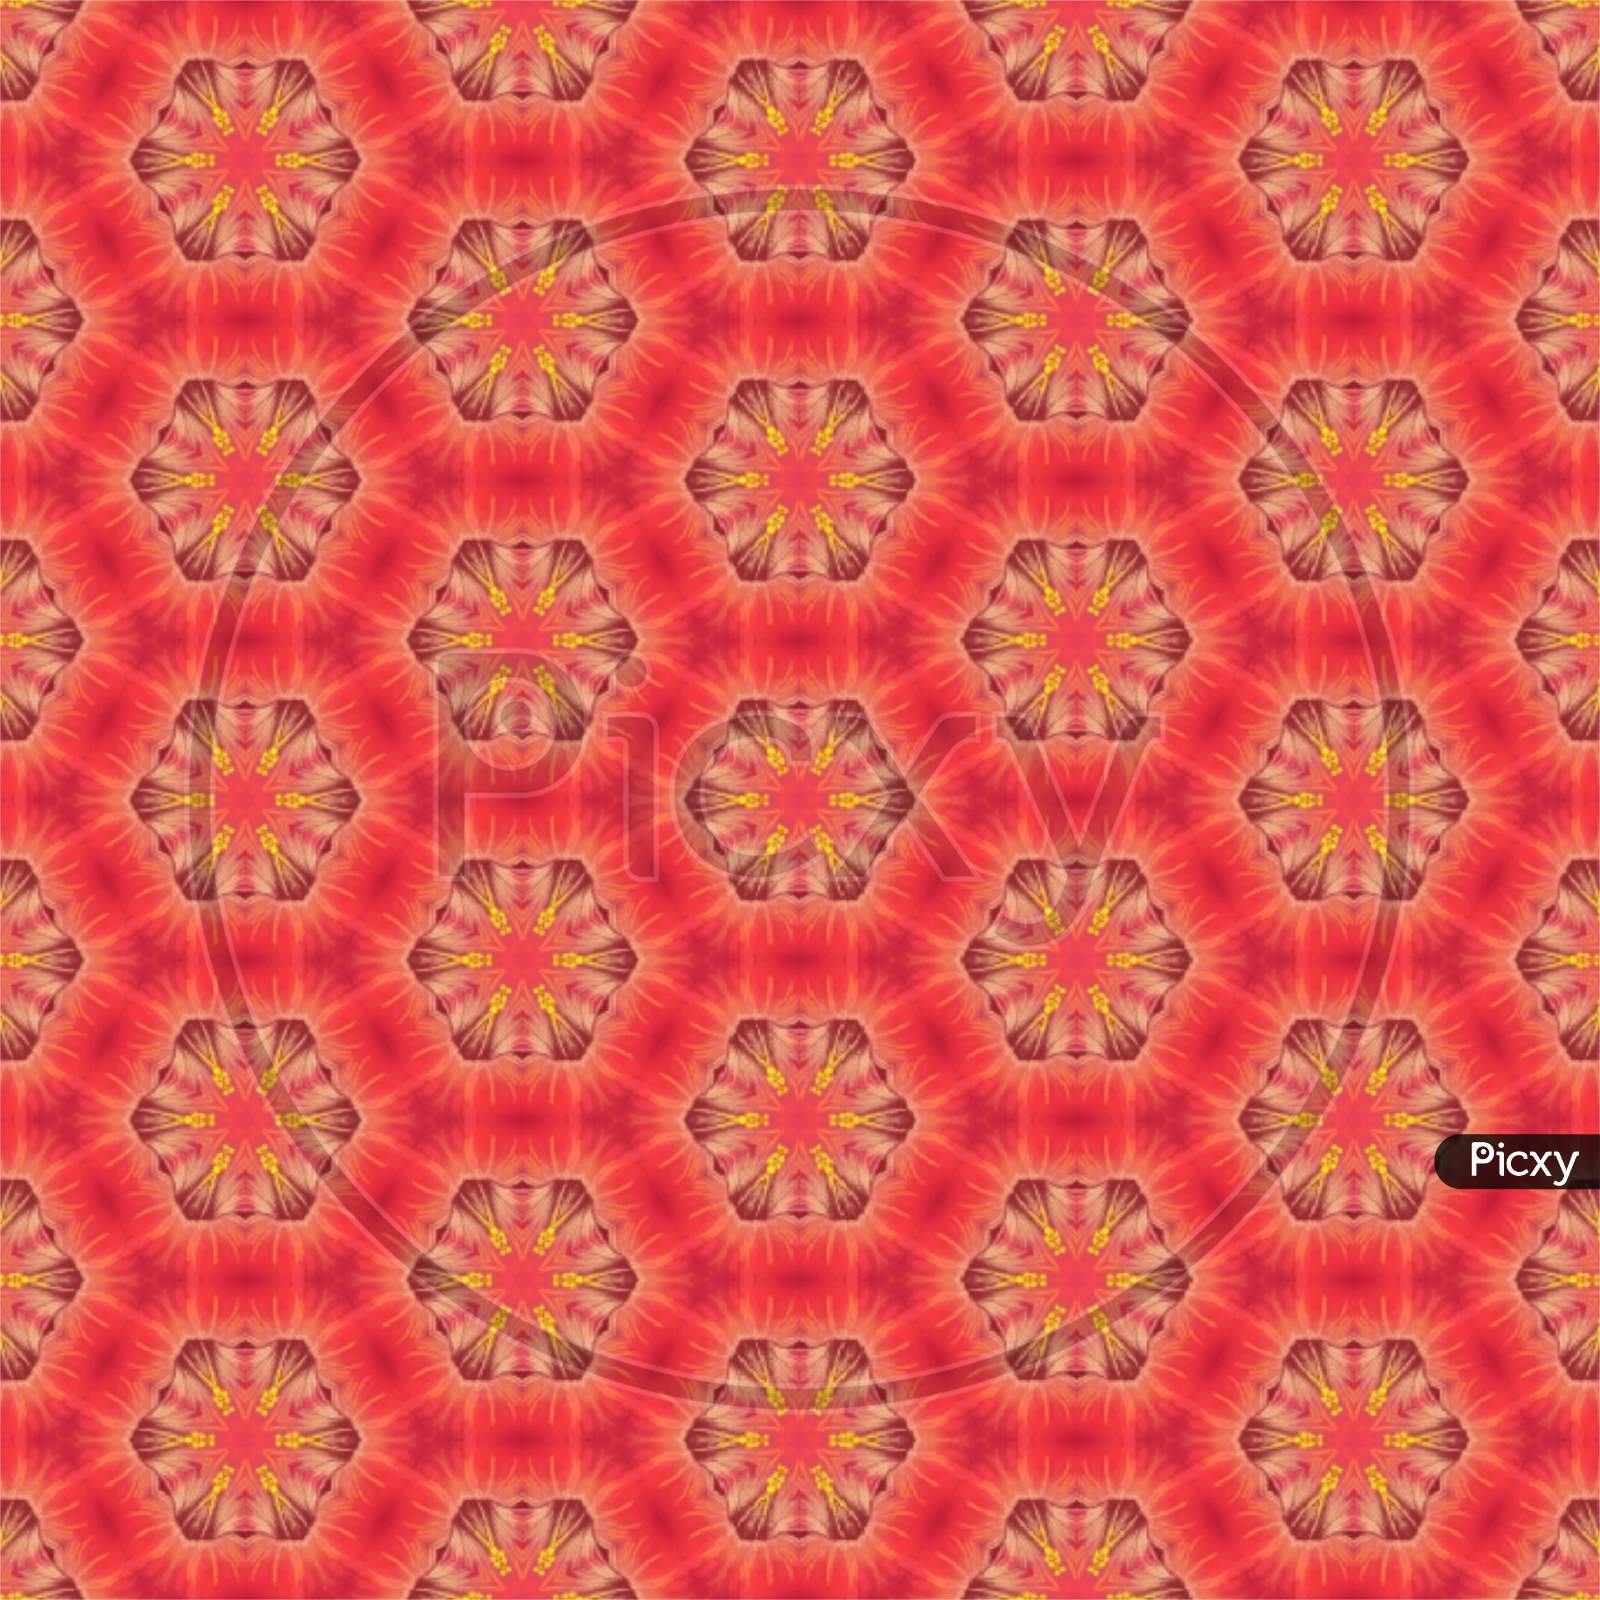 Red colour flowers textile design illustration